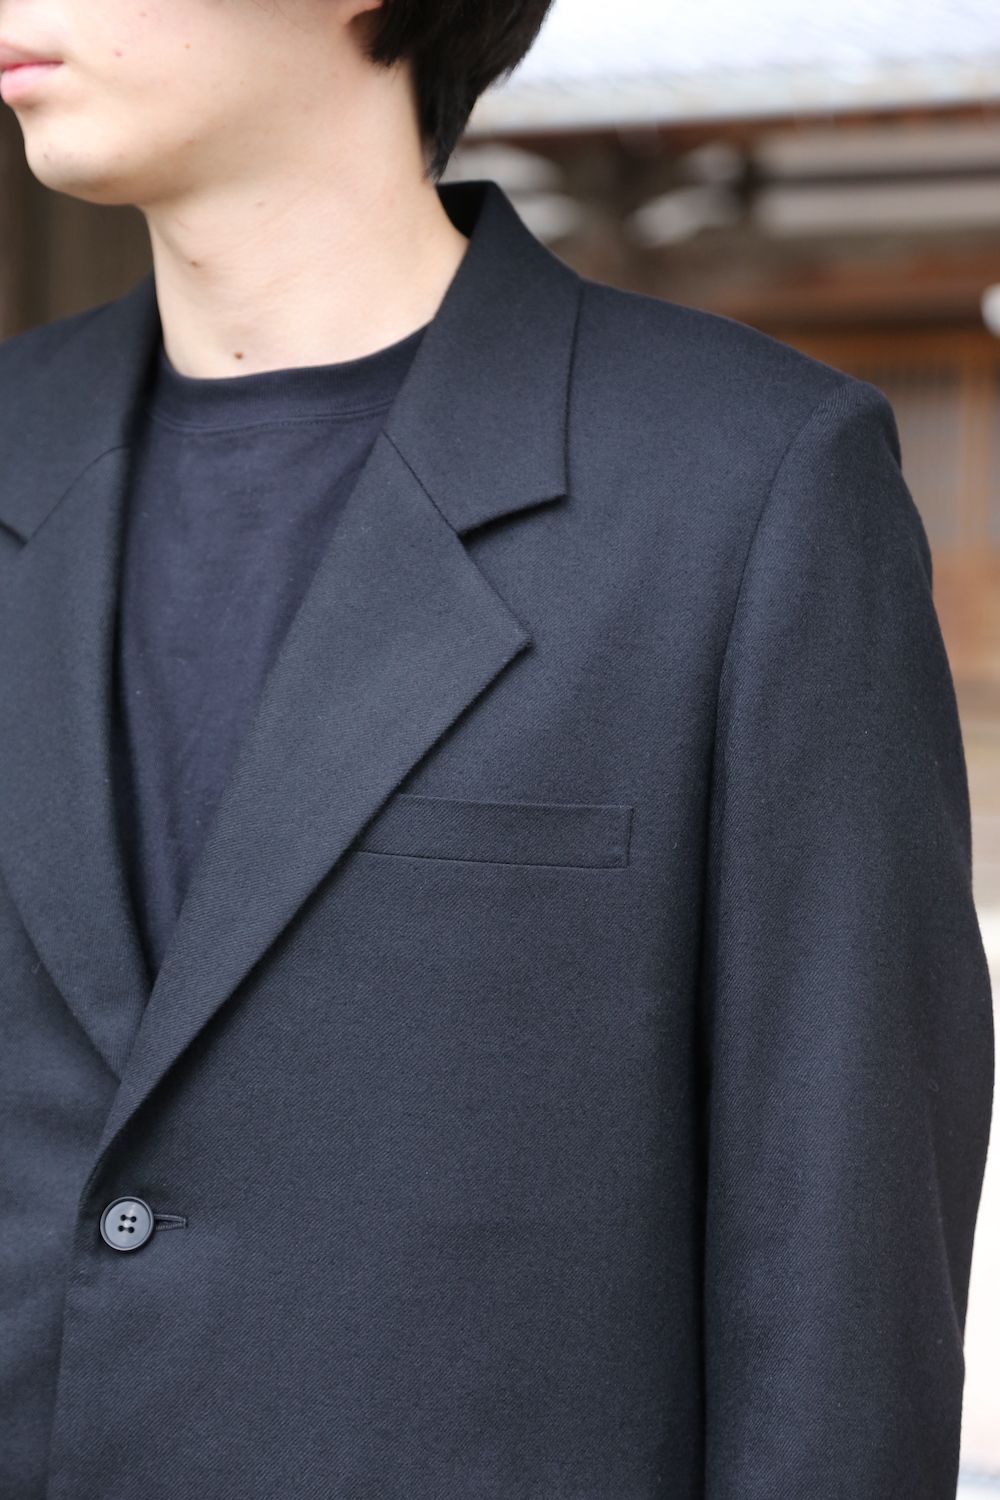 当季大流行 2Button / MATSUFUJI Tailored Wool Jacket - テーラードジャケット - stateracap.com